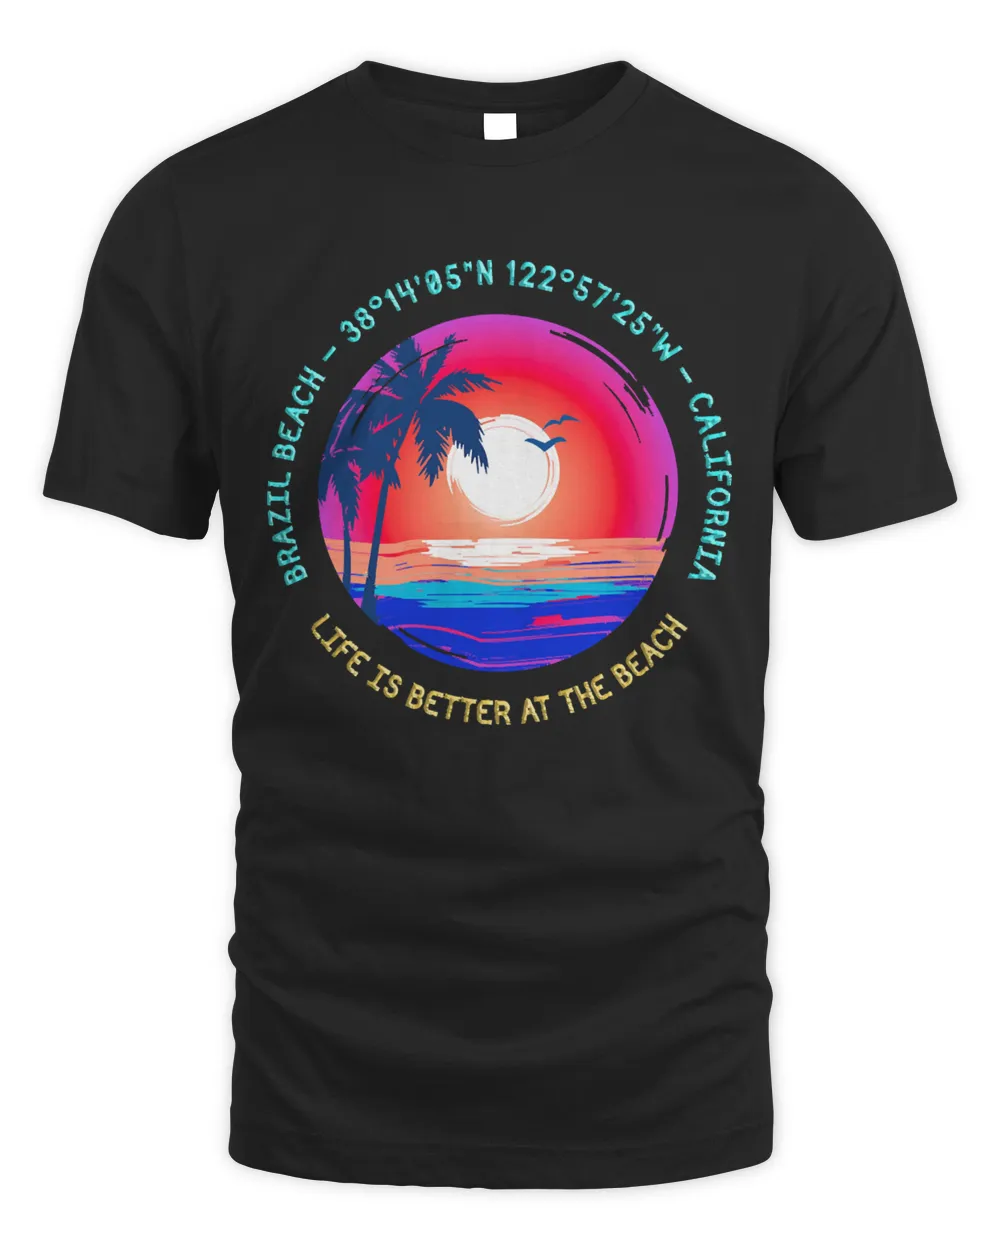 Brazil Beach T- Shirt Brazil Beach, California T- Shirt